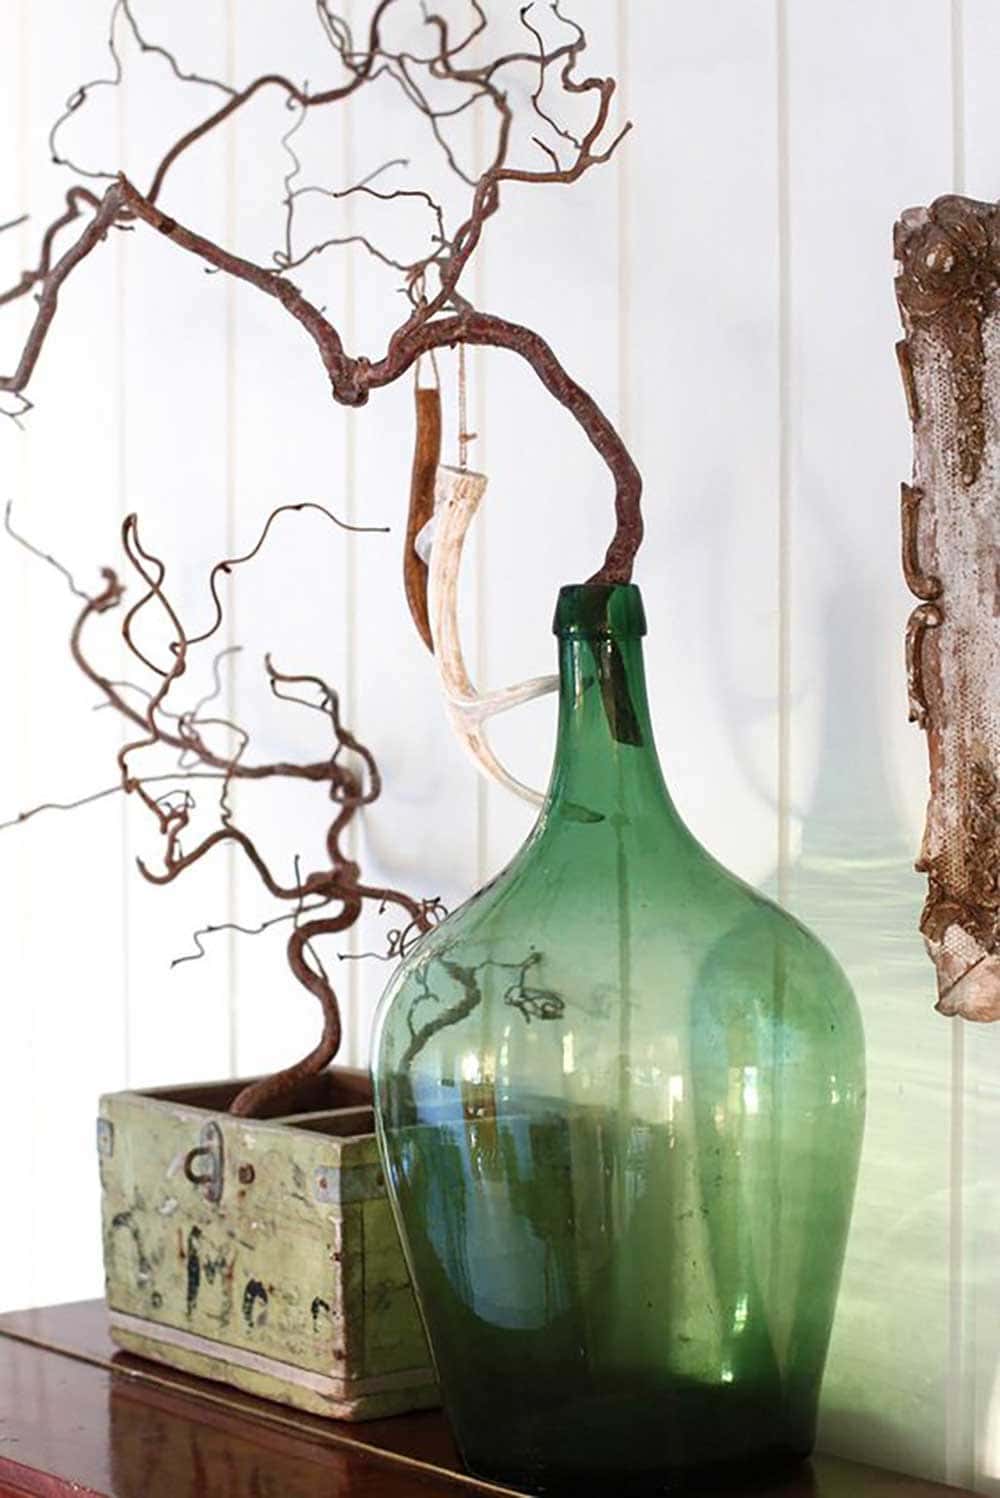 Bonbonne en verre ancienne décorée avec des branches - Decorazine.fr